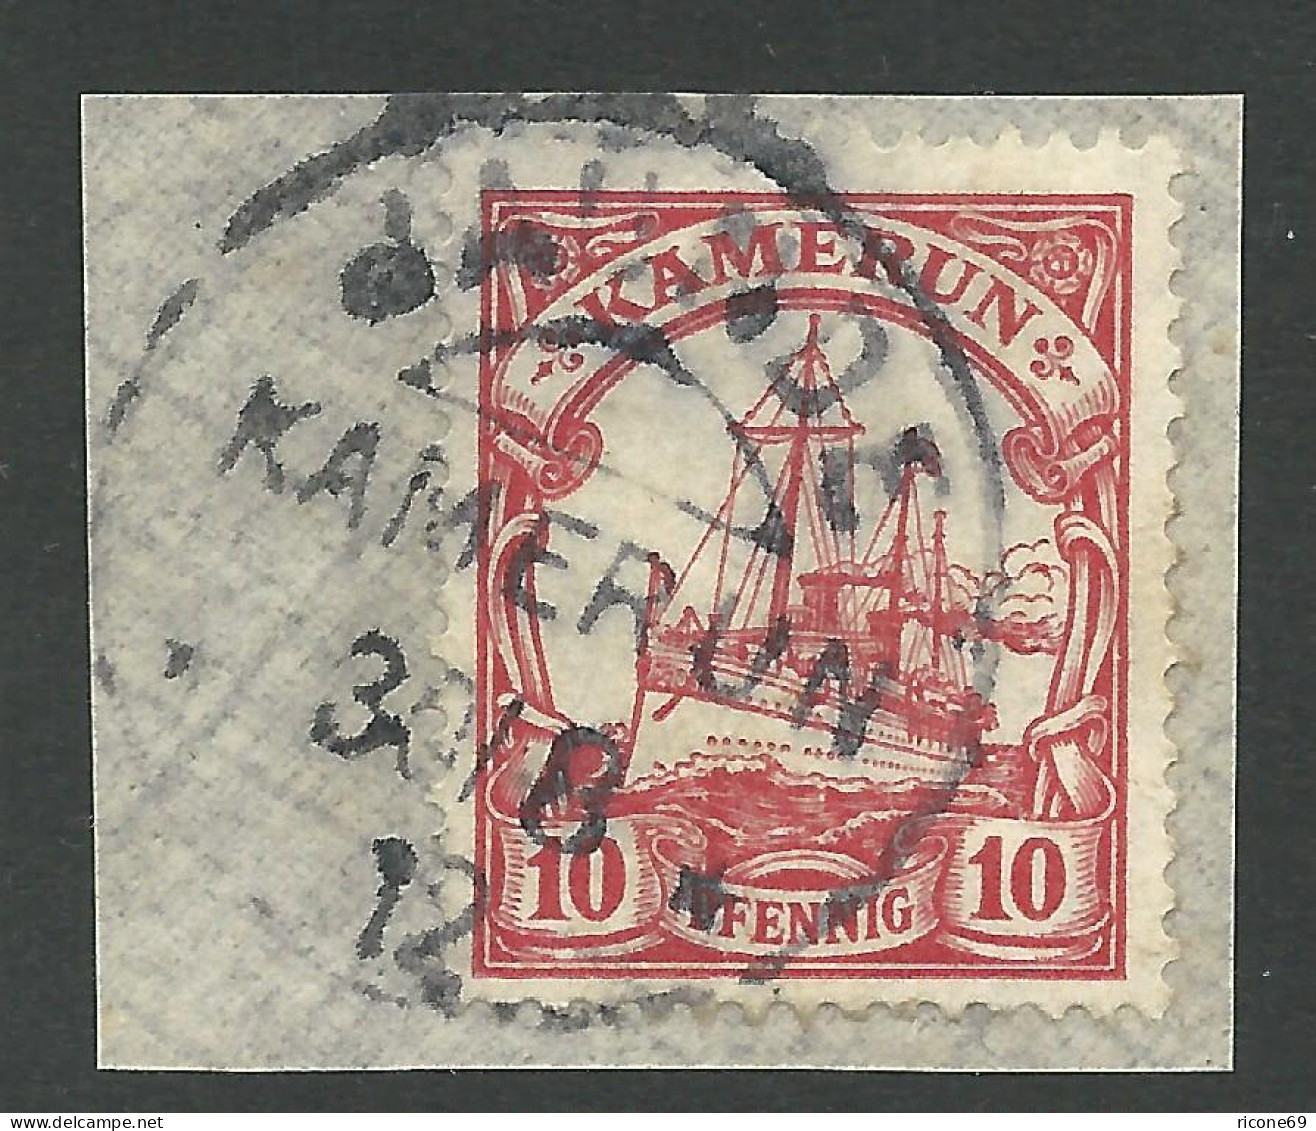 Kamerun 22, 10 Pf. Auf Briefstück M. Stpl. JAUNDE - Kamerun